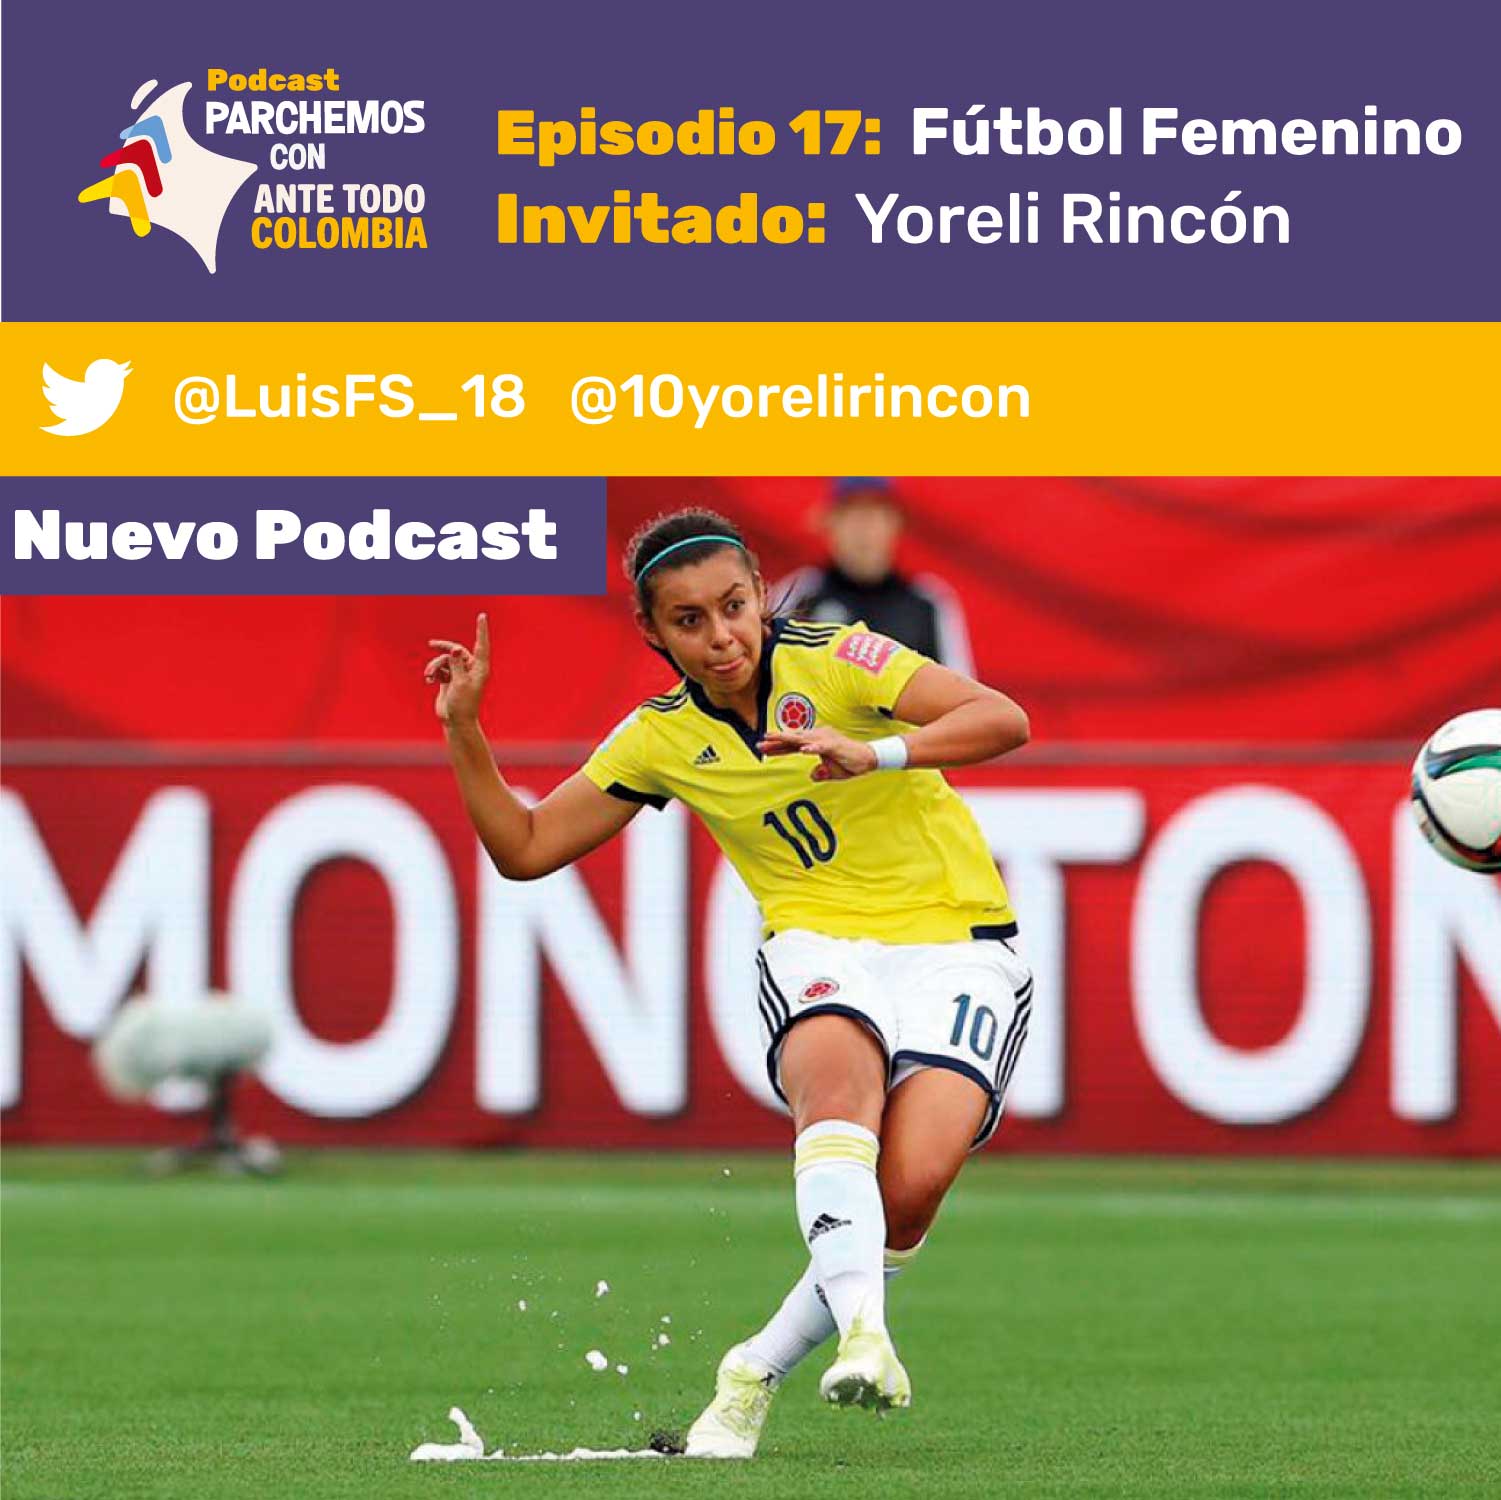 Episodio 17 – Fútbol Femenino con Yoreli Rincón